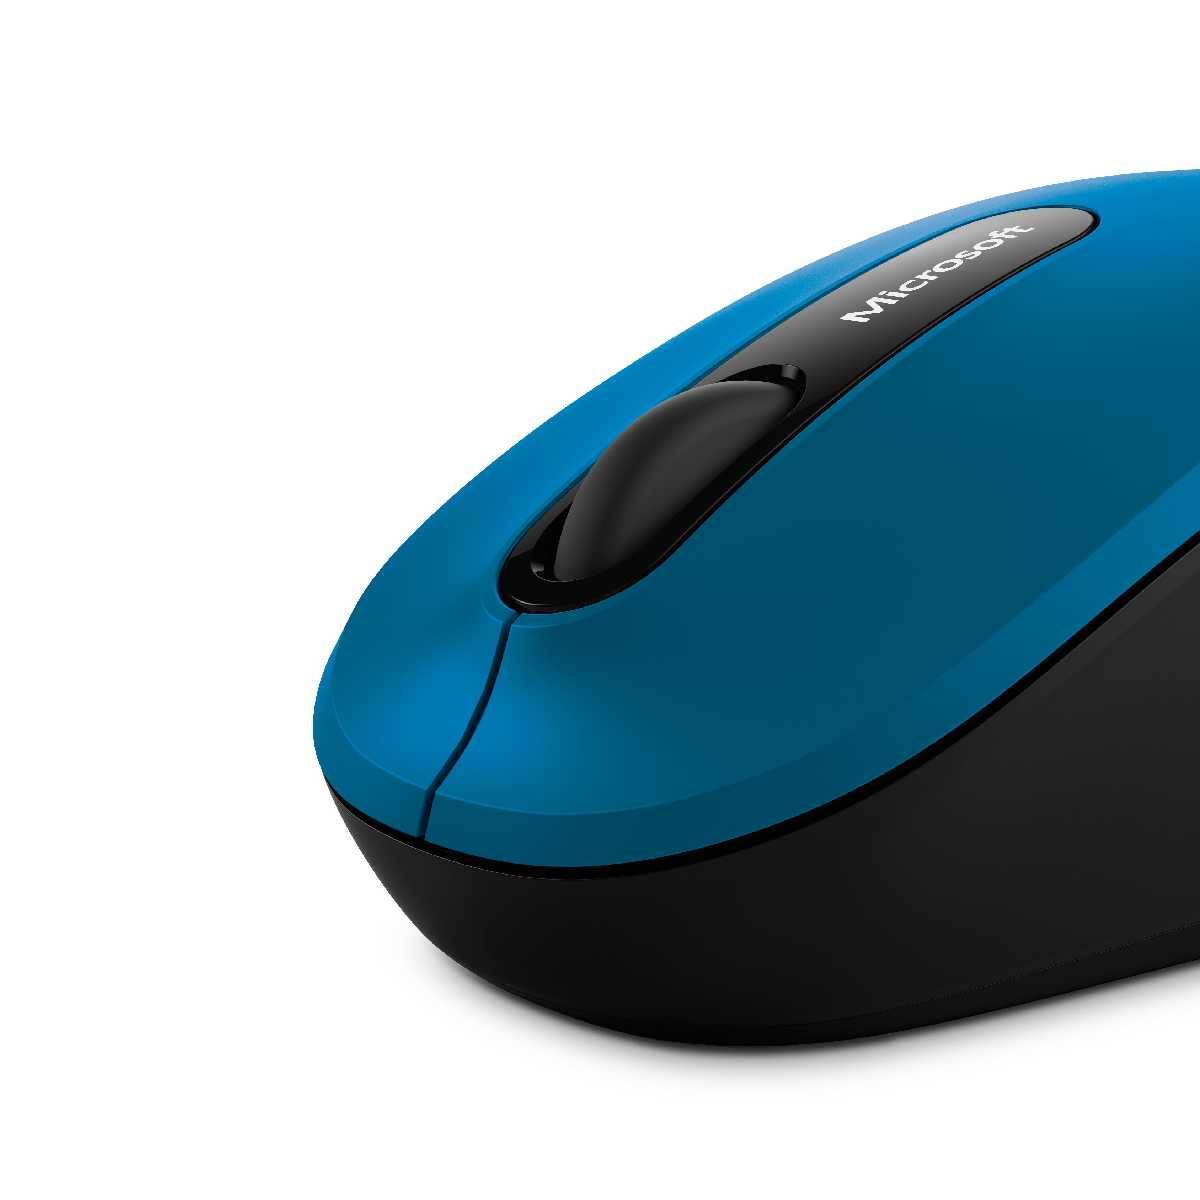 Microsoft Bluetooth Mouse 3600 blau